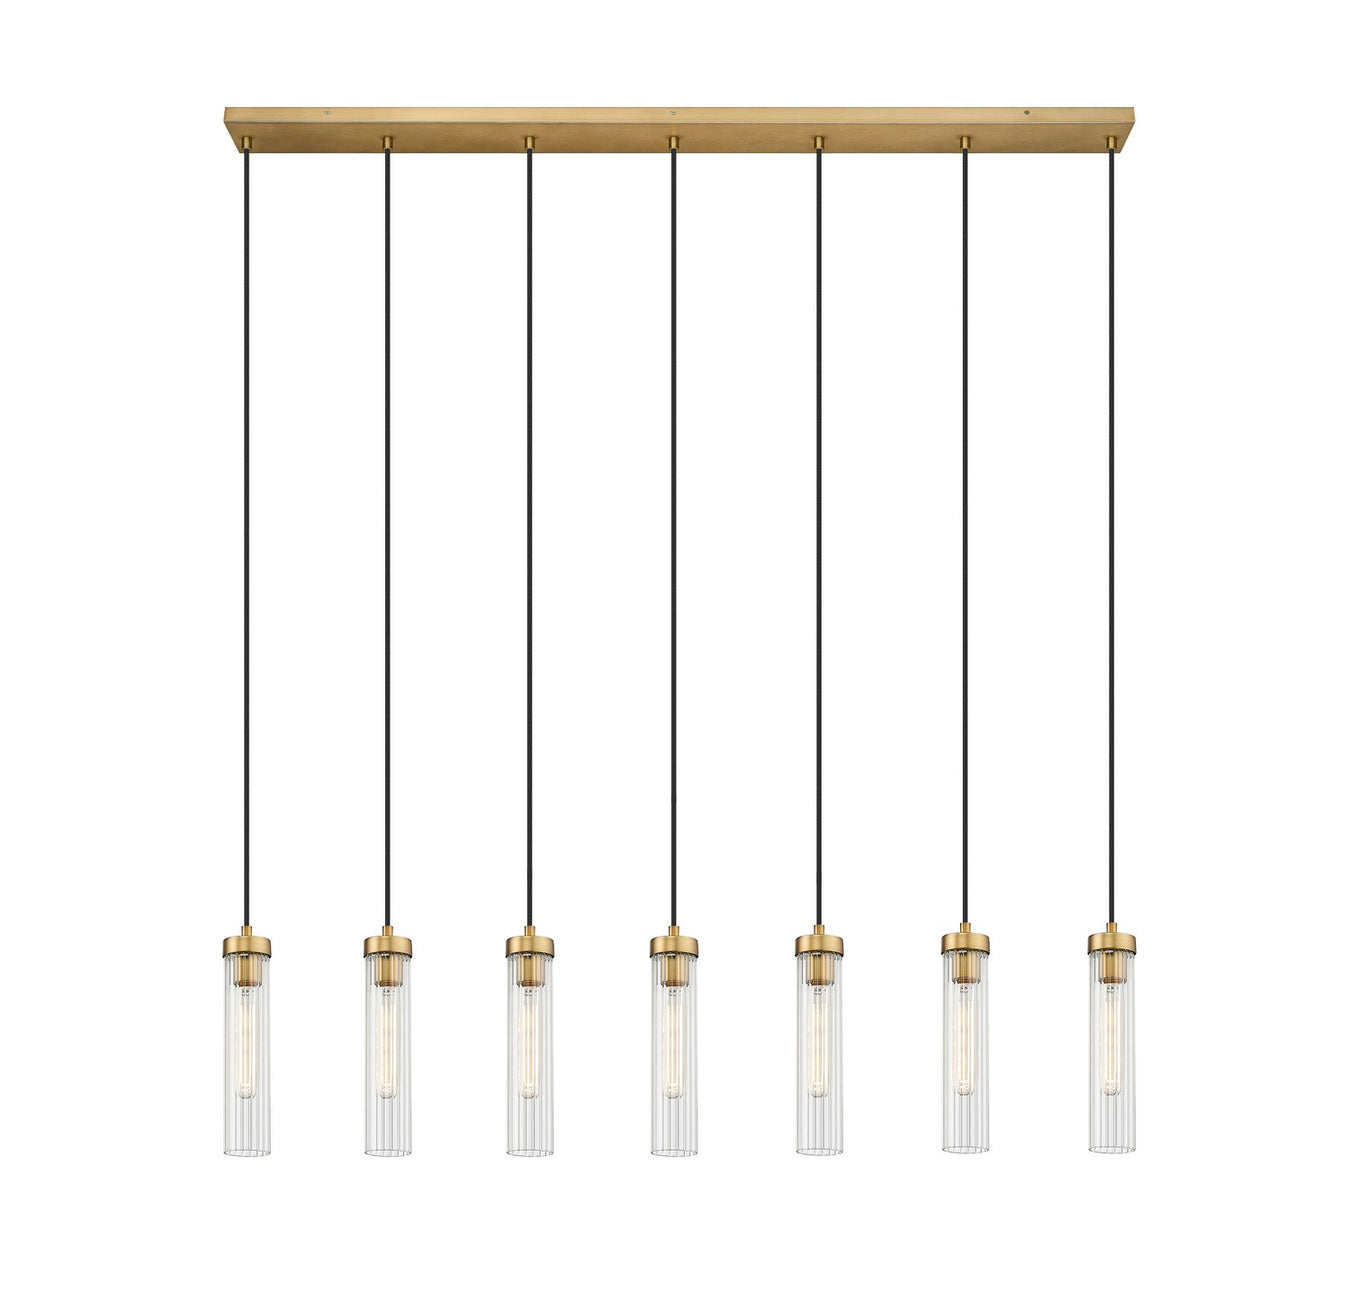 Beau Seven Light Linear Chandelier in Rubbed Brass by Z-Lite Lighting